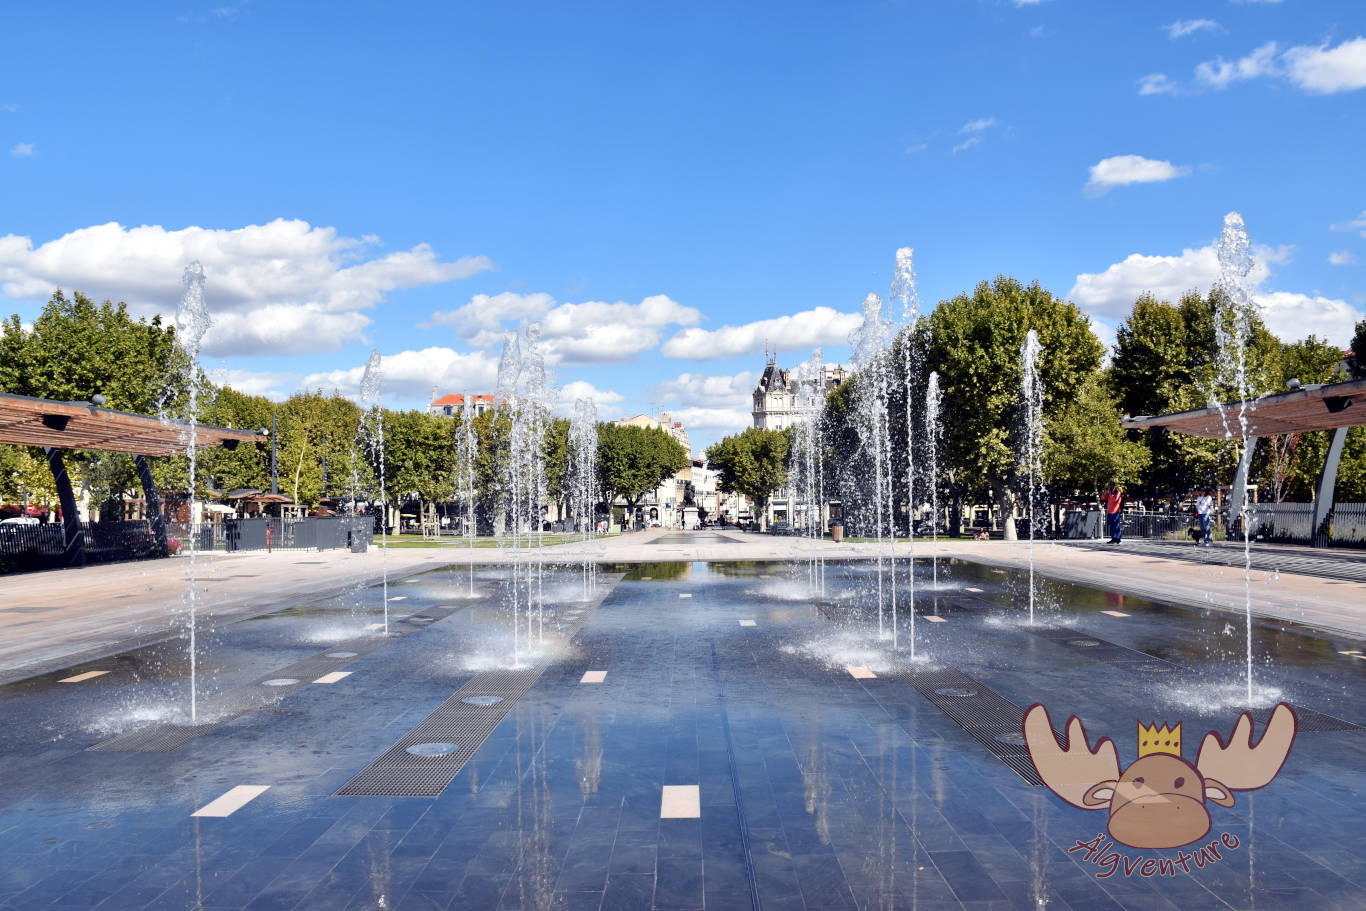 Auf diesem Bild sind Springbrunnen vor der Statue Riquet in Béziers zu sehen. | This picture shows fountains in front of the statue of Riquet in Béziers.